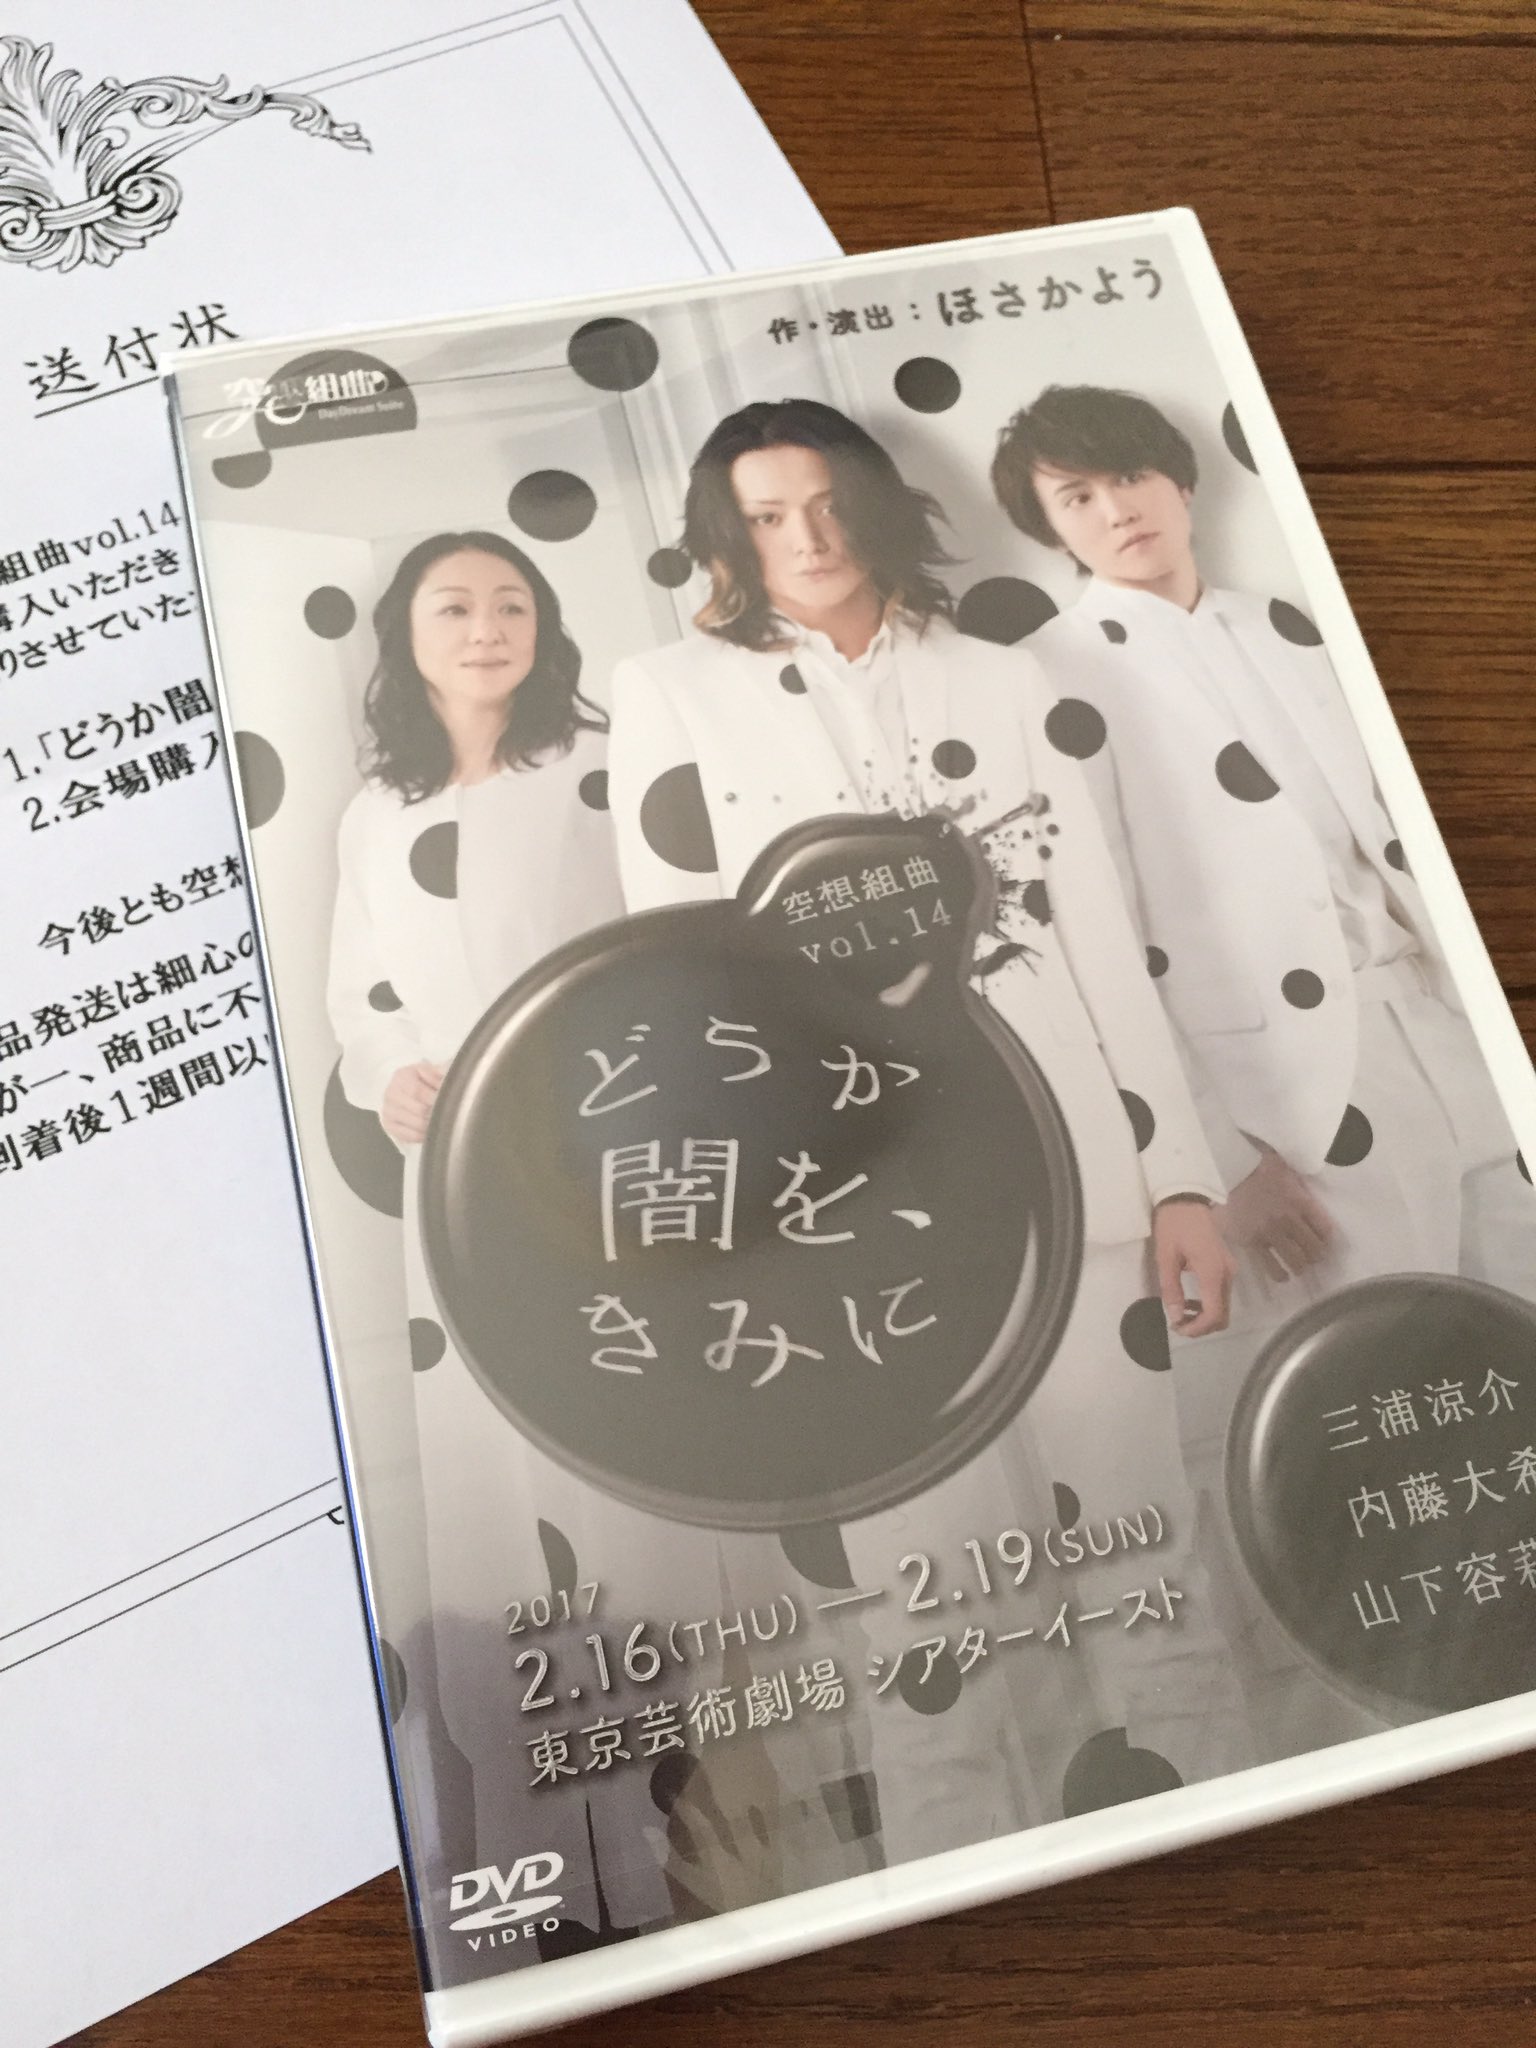 廃盤 舞台 空想組曲 vol.14 どうか闇を、きみに DVD 三浦涼介 - 演劇